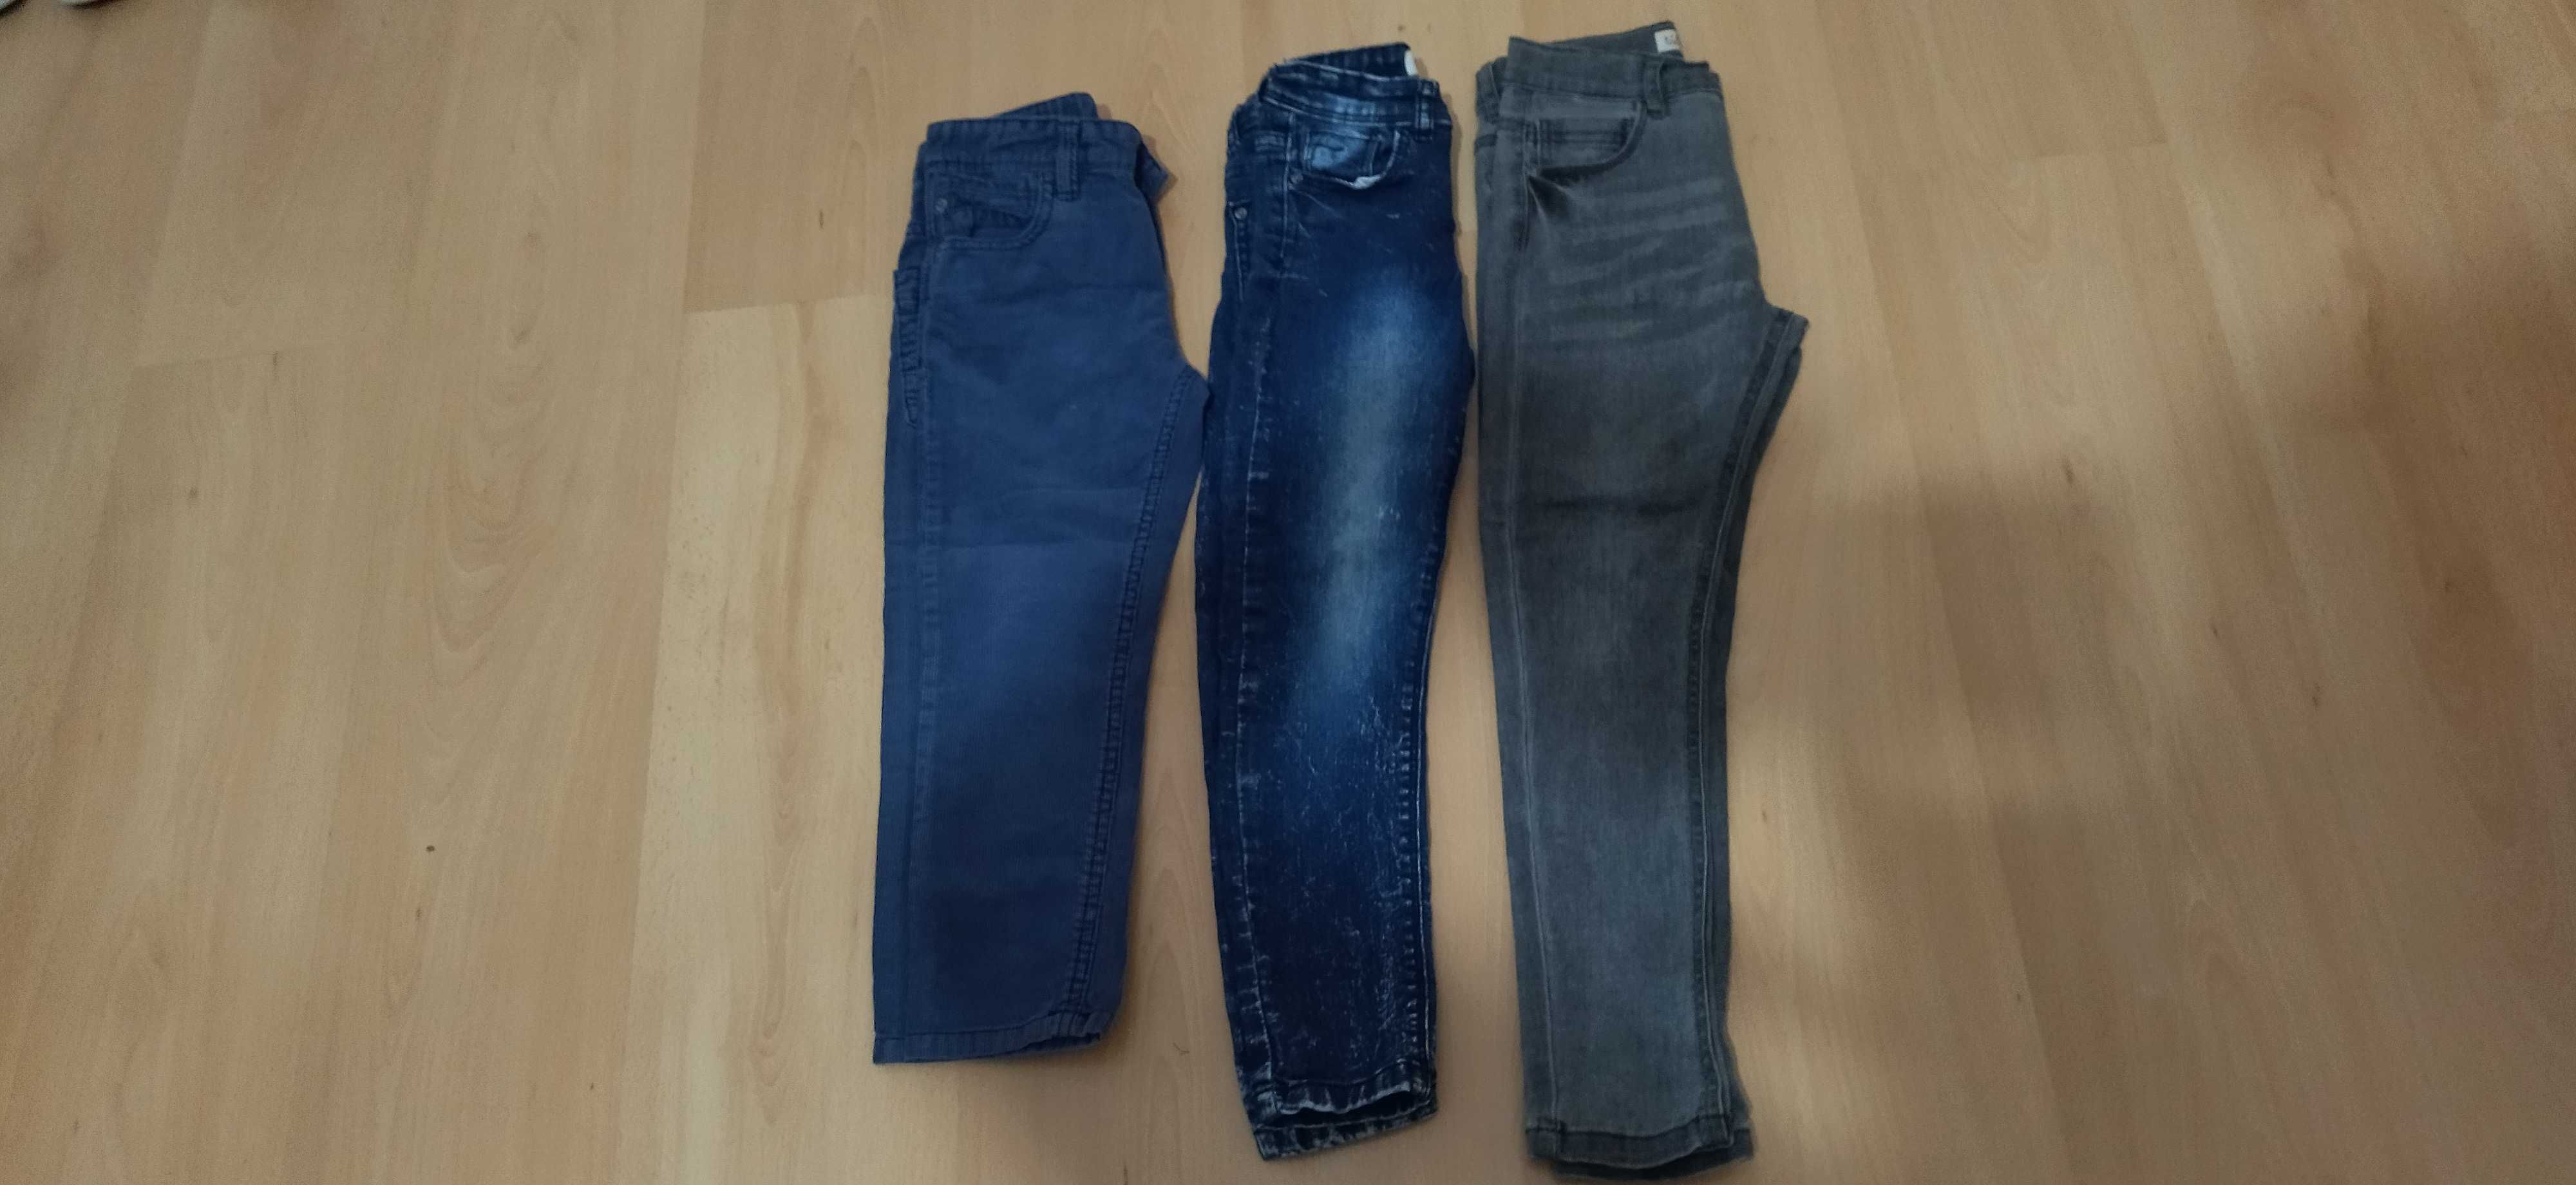 Lote calças jeans criança dos 4 aos 7 anos -grande oportunidade